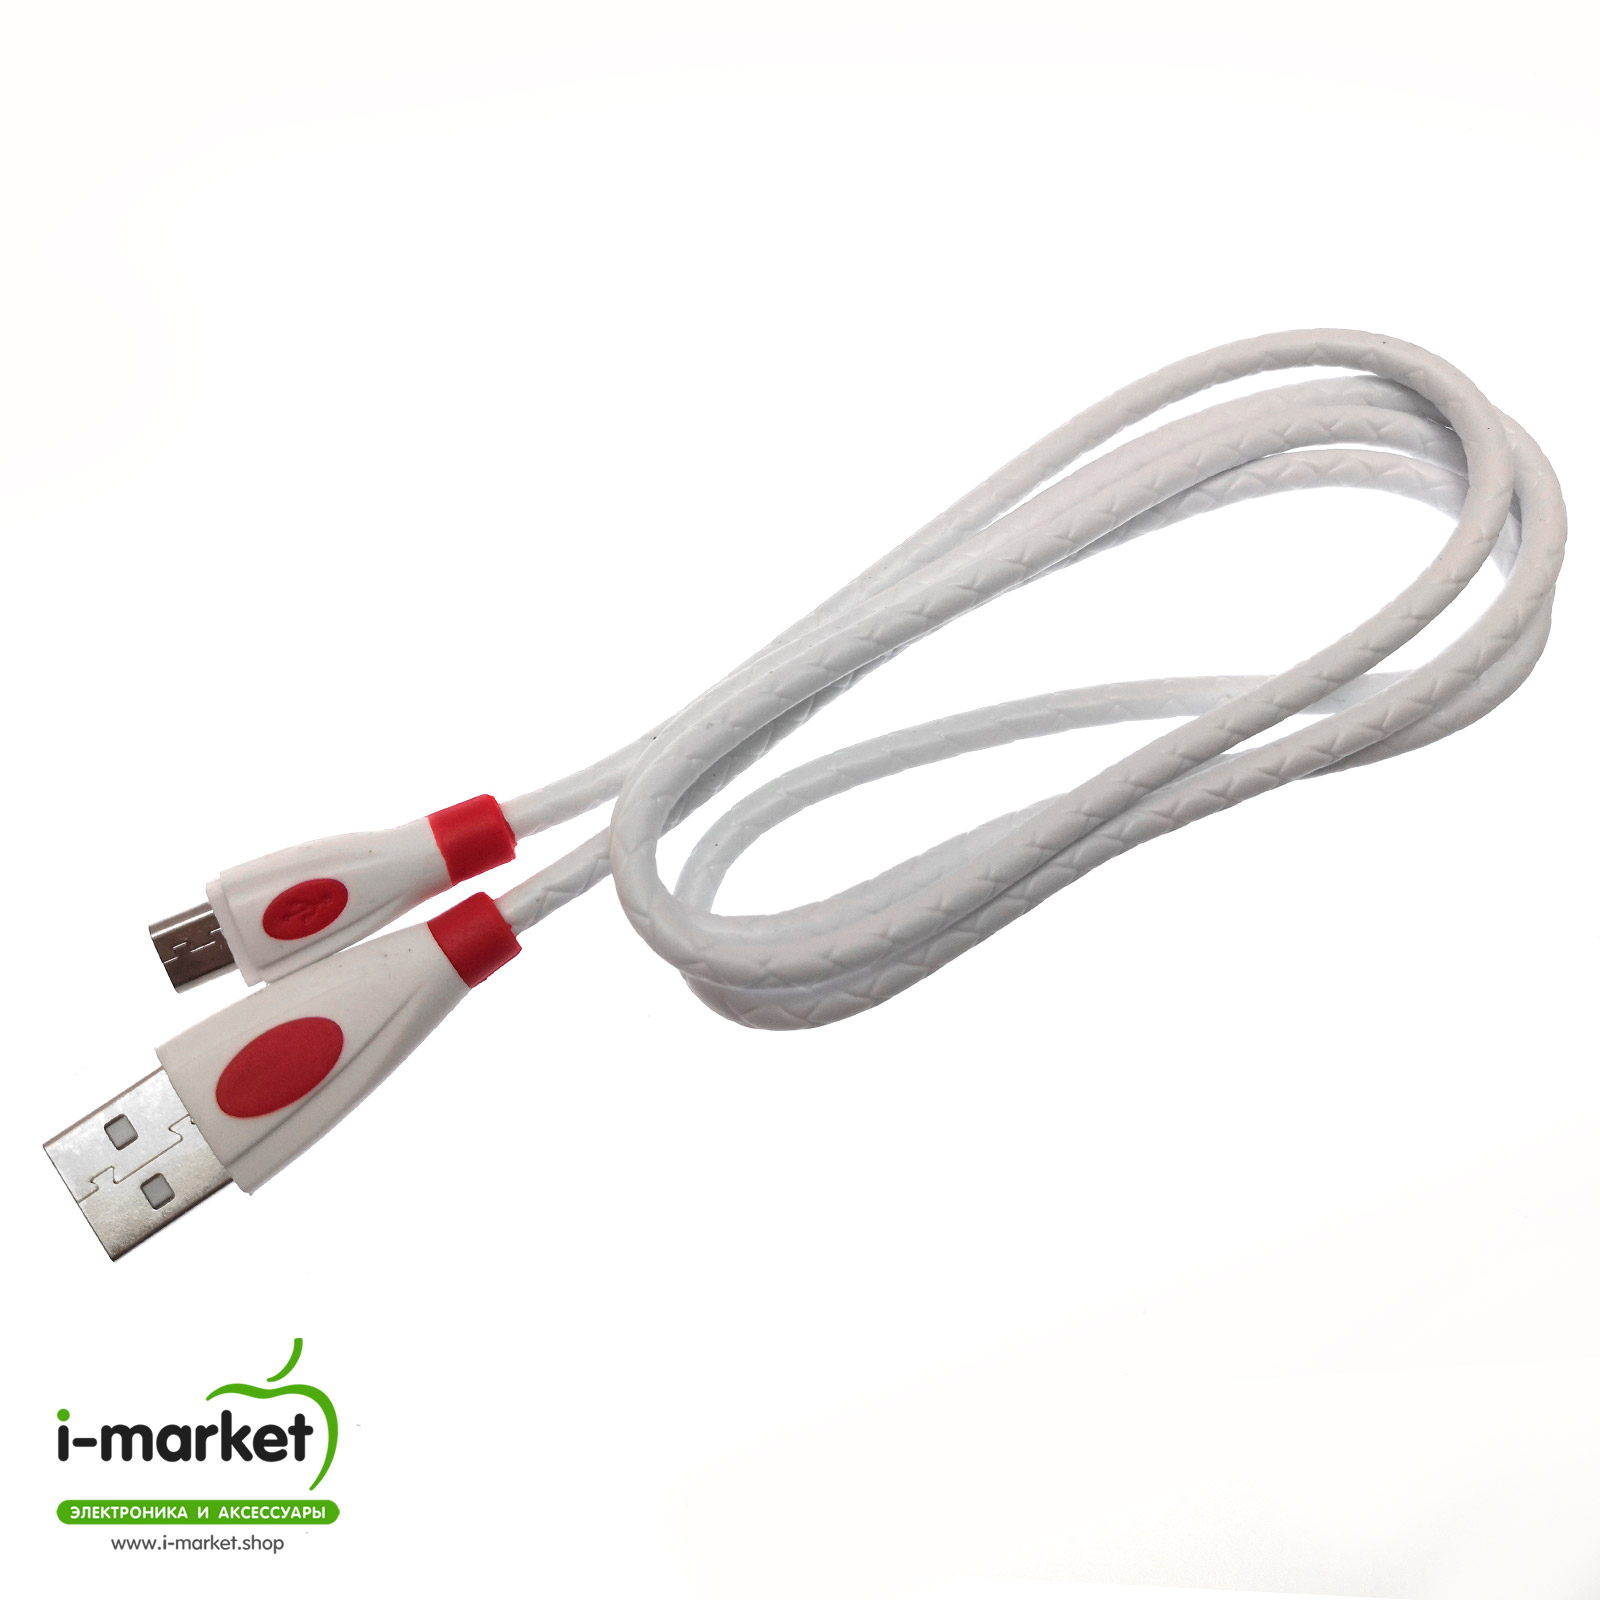 USB Дата кабель Micro USB, силиконовый, текстурированная оплетка, длина 1 метр, цвет белый RED.